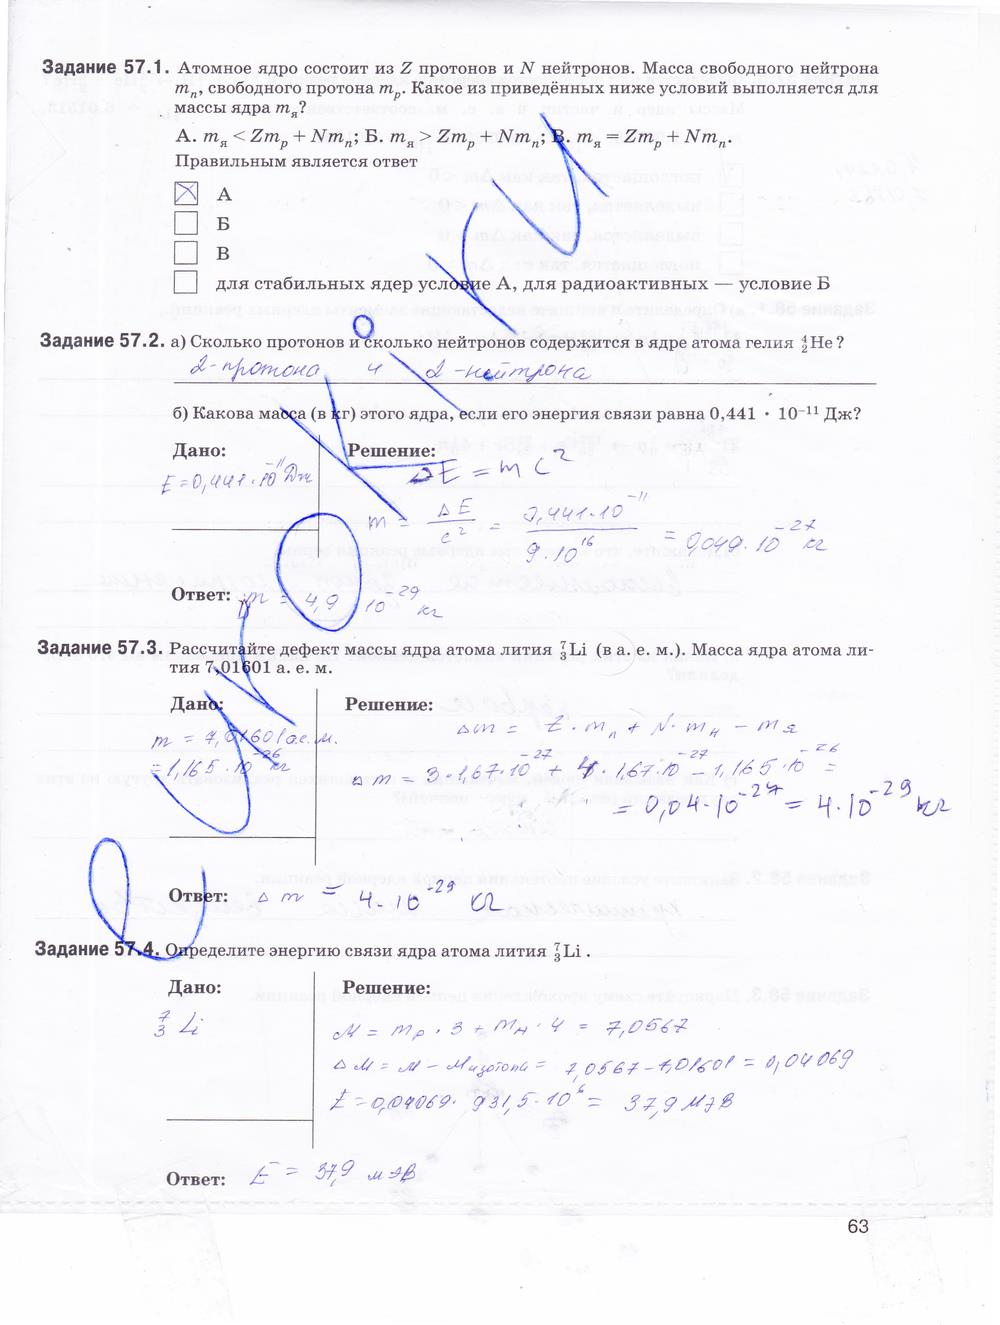 гдз 9 класс рабочая тетрадь страница 63 физика Гутник, Власова